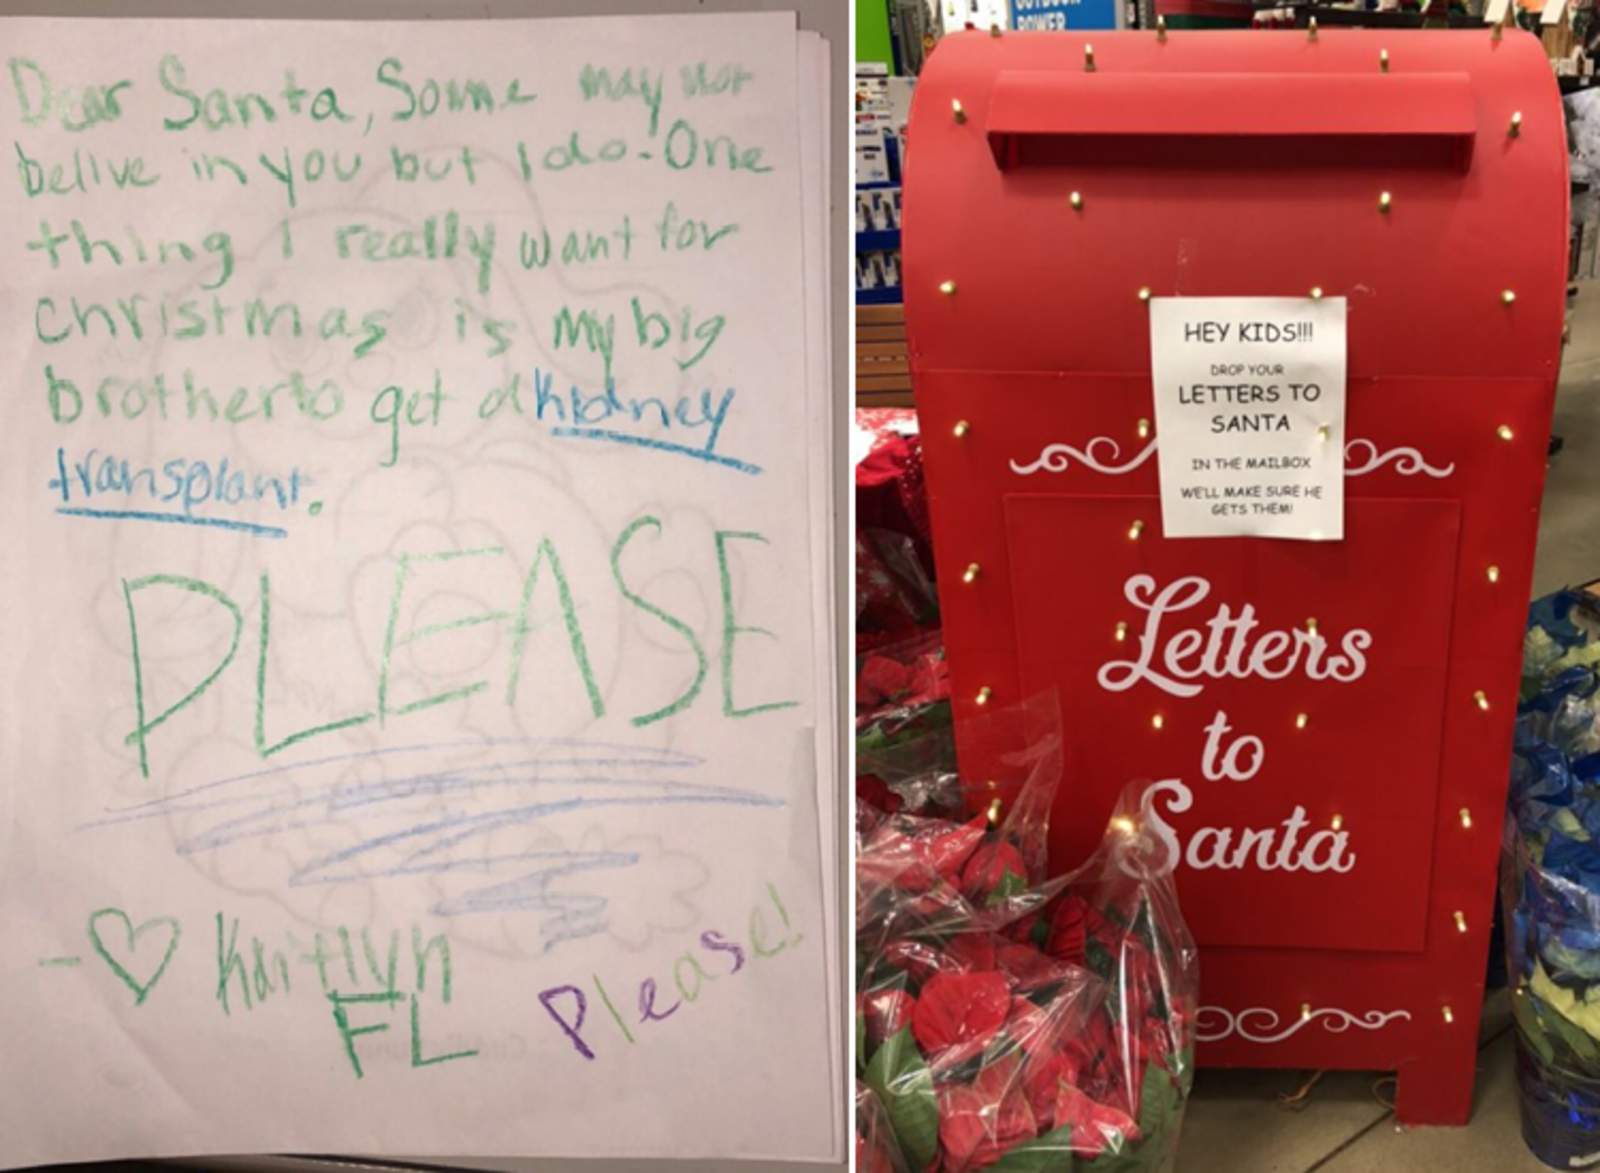 Un empleado de una tienda encontró la carta en el correo para Santa. (INTERNET)